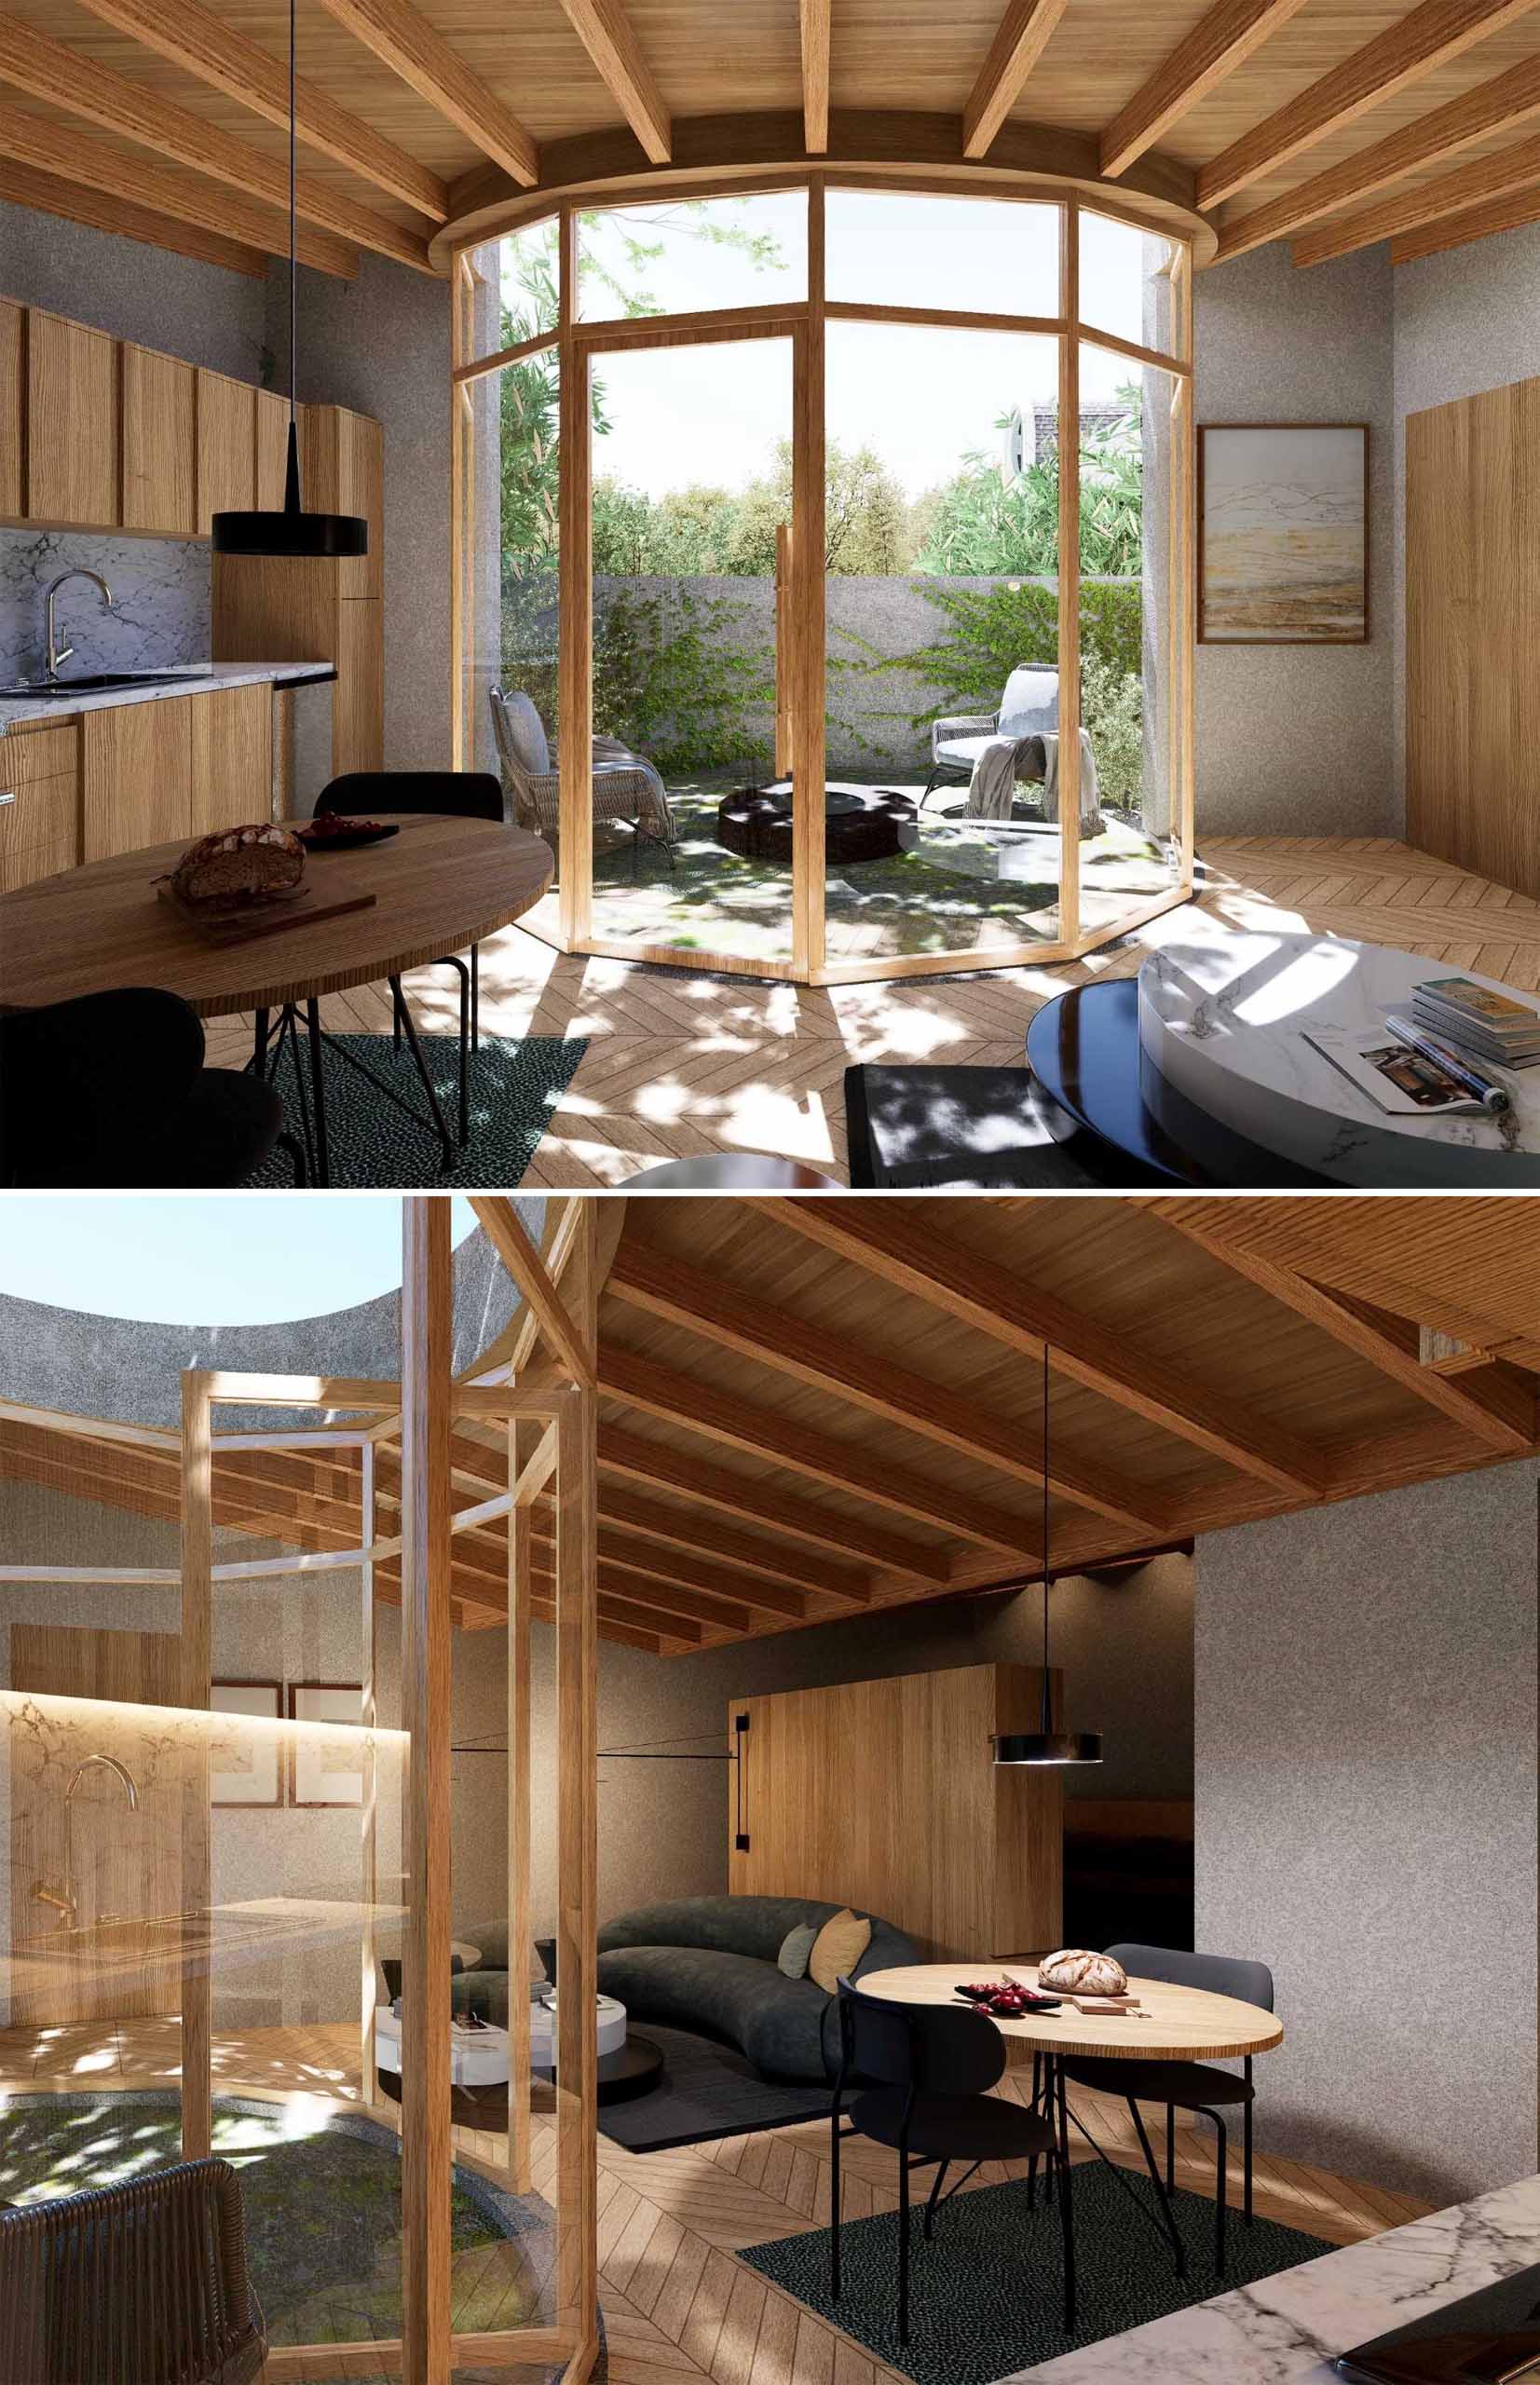 Un ADU modern, cu un design curbat, include un plan deschis cu bucătăria, zona de luat masa și camera de zi care împart spațiul.